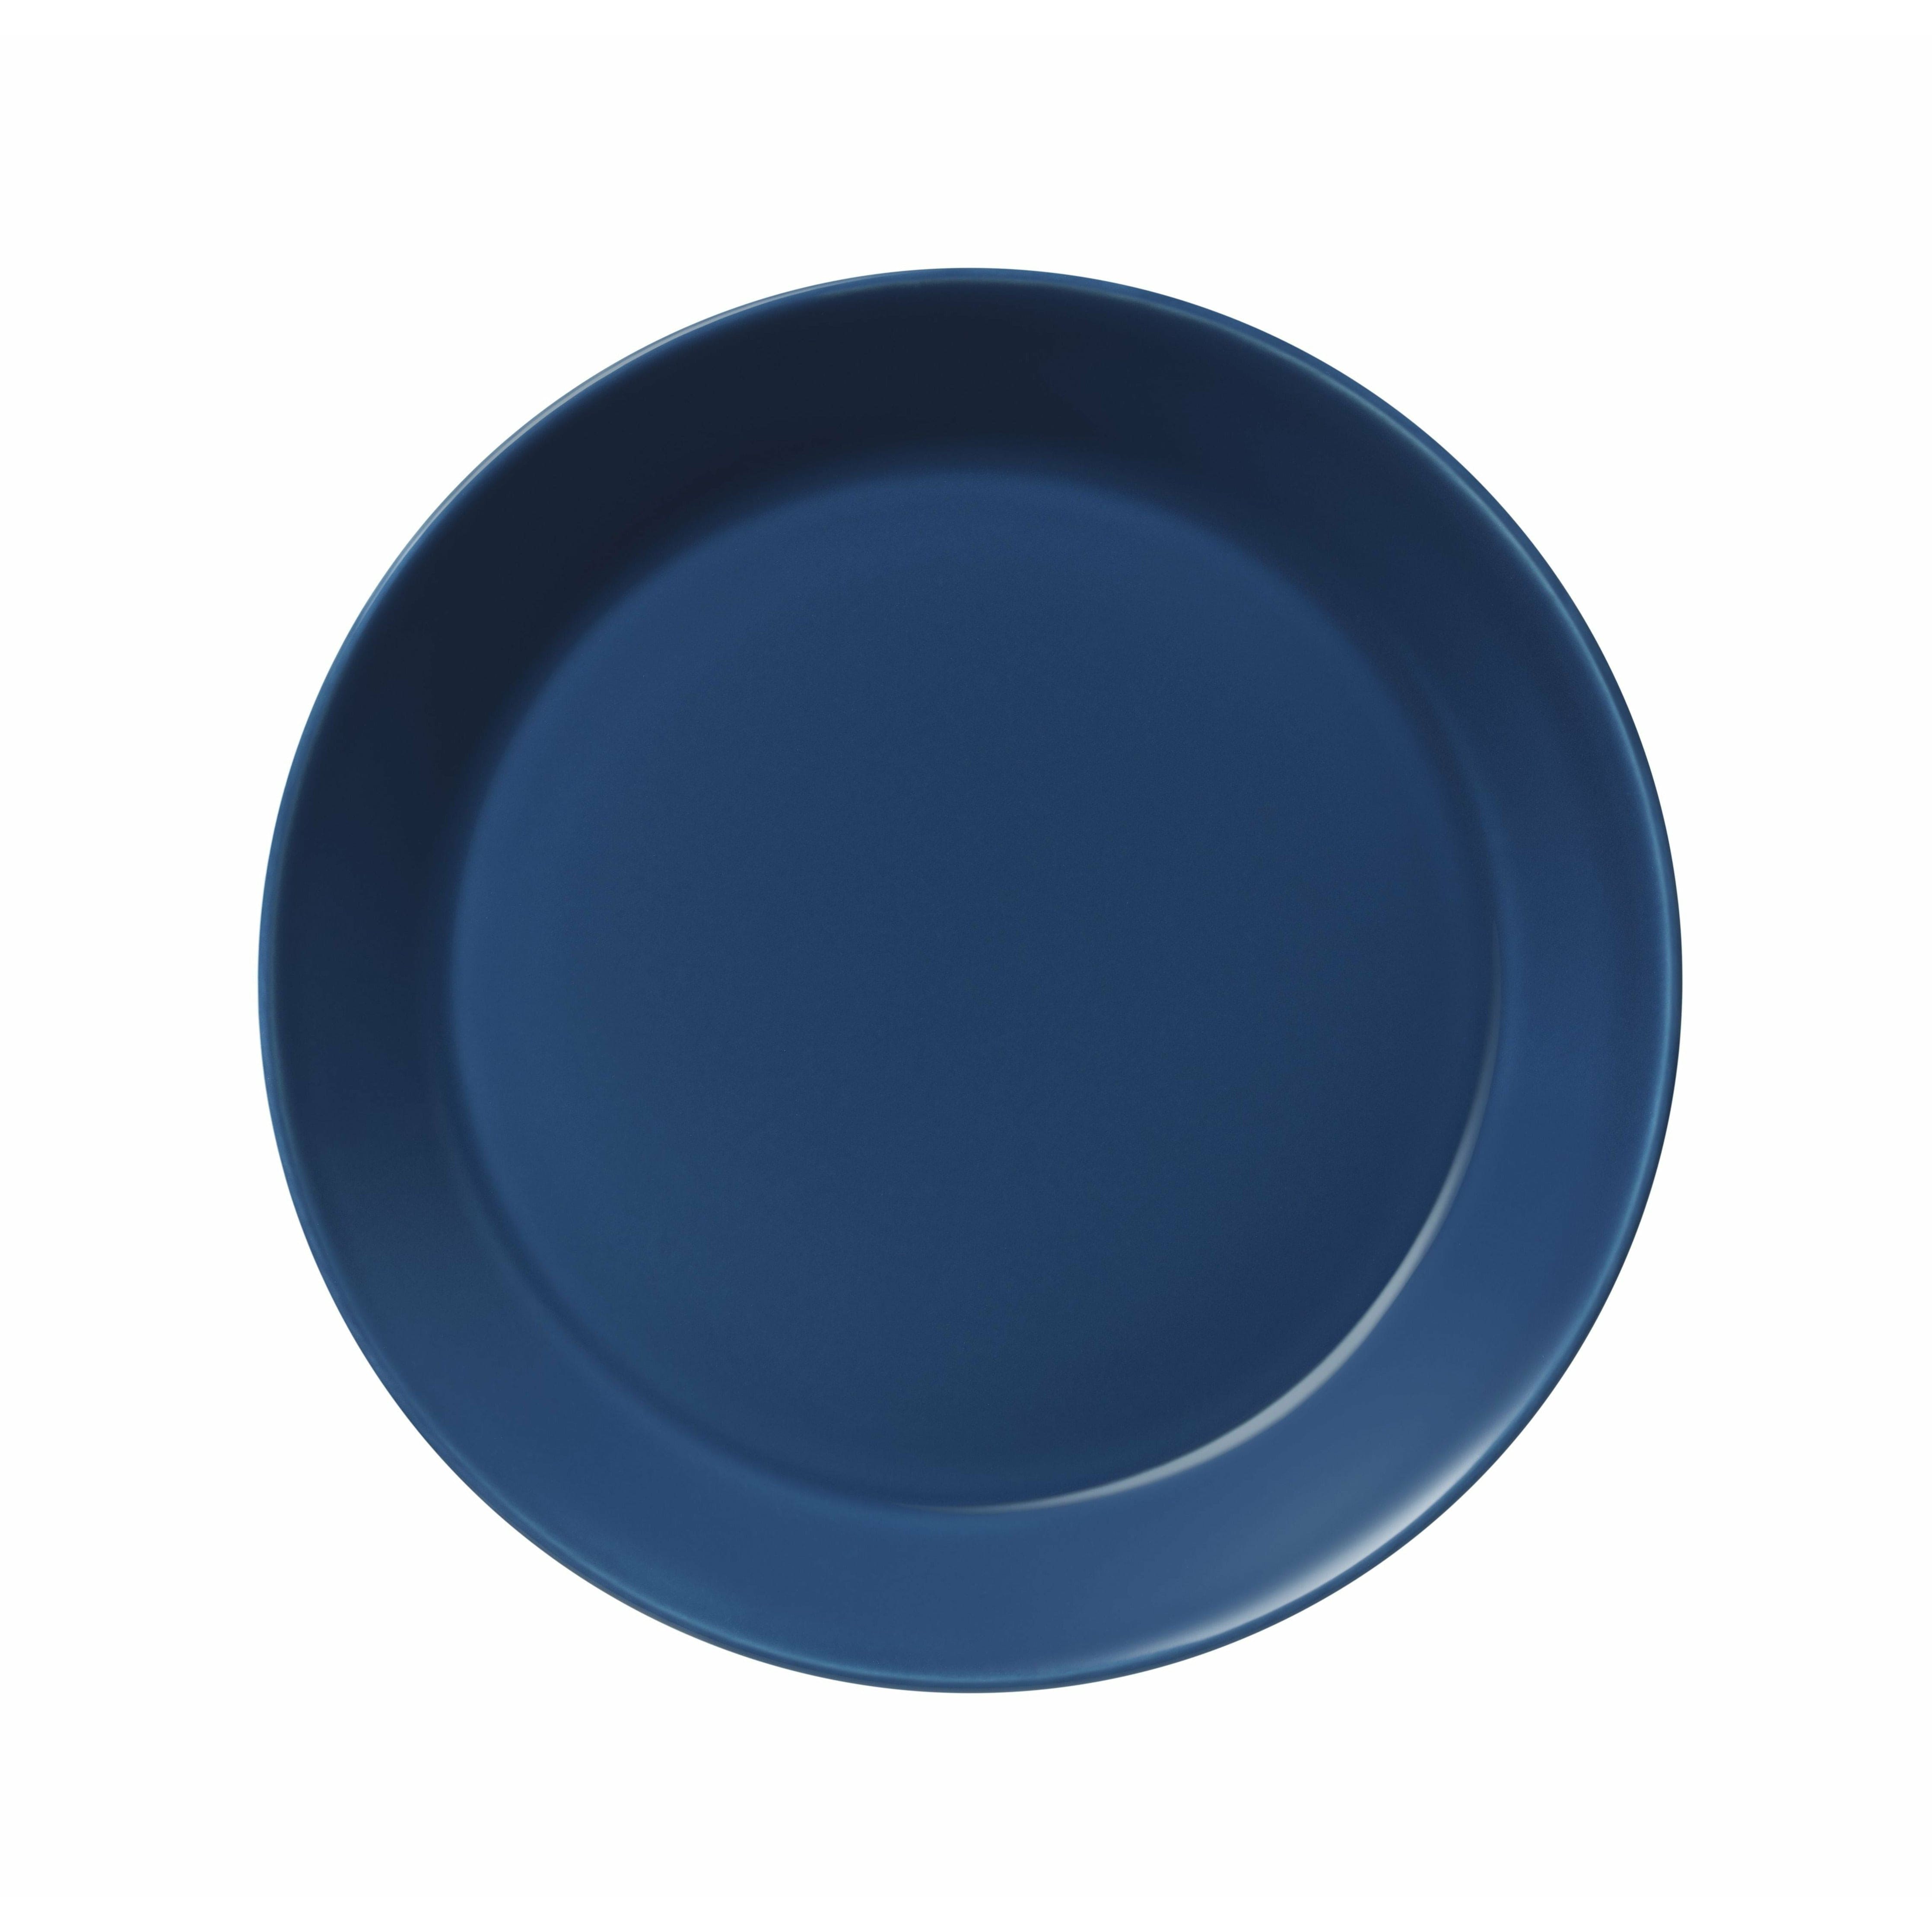 Iittala Teema Plate Flat 21cm, Vintage Blue